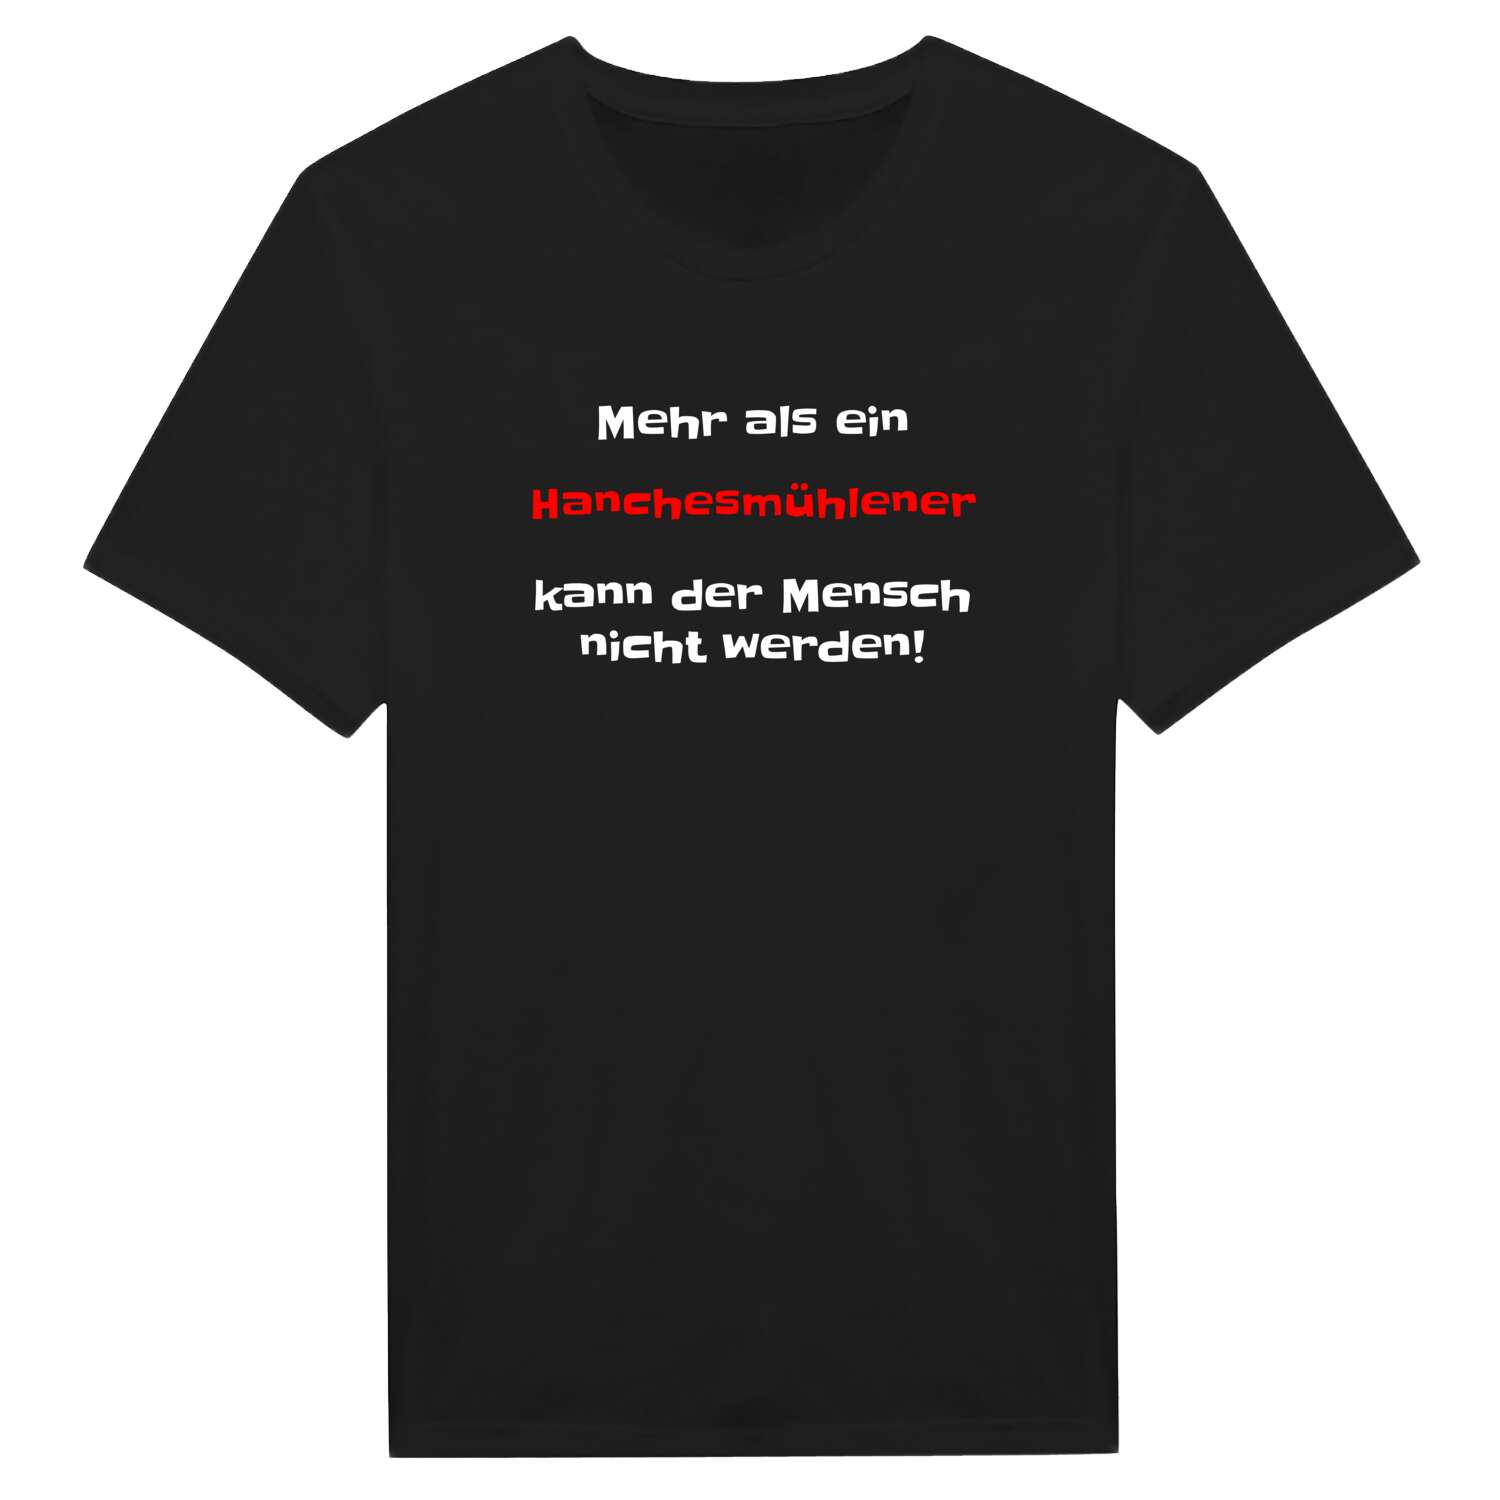 Hanchesmühle T-Shirt »Mehr als ein«